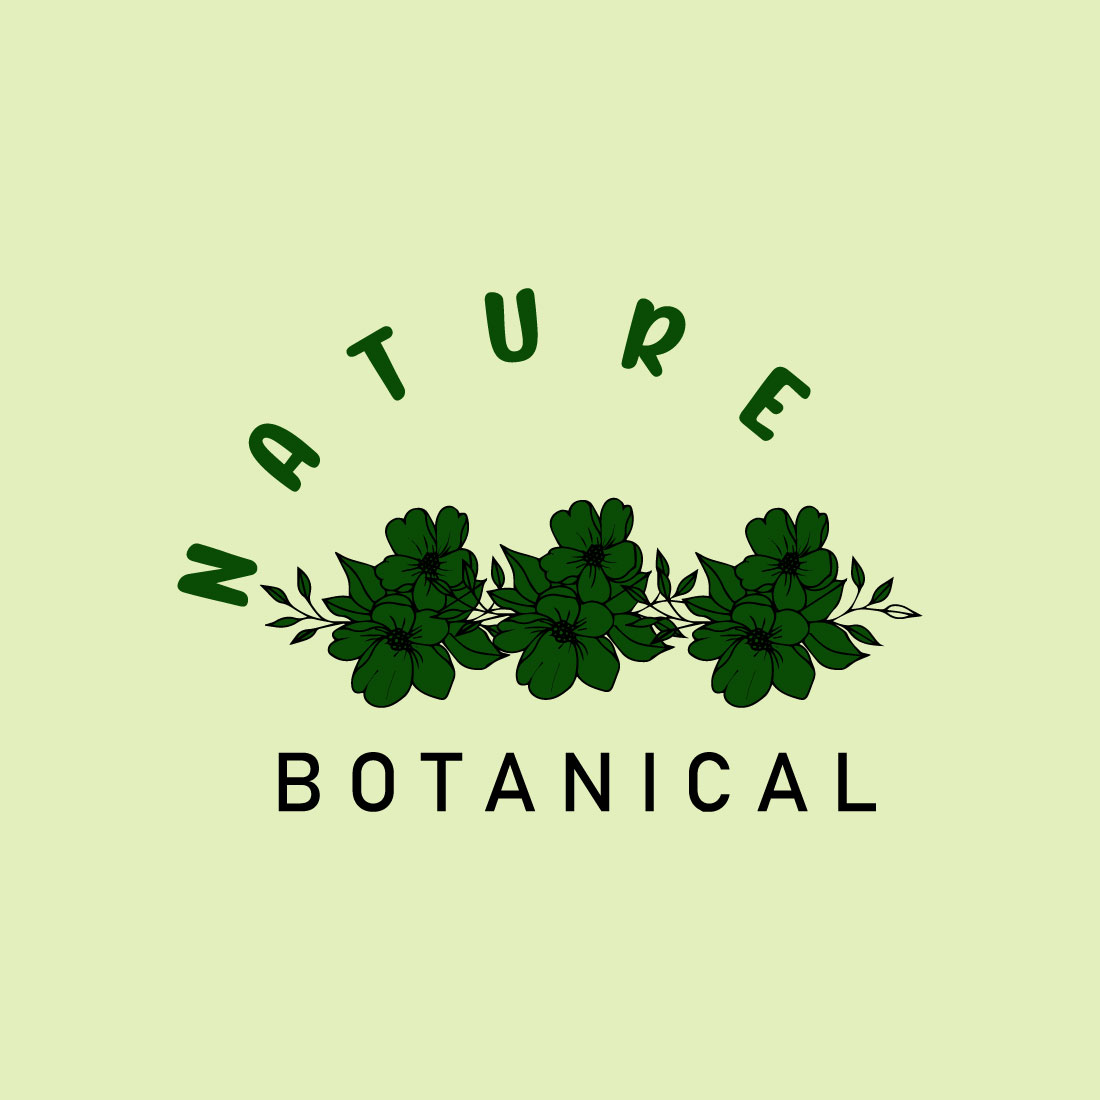 Free botanical green drawing logo preview image.